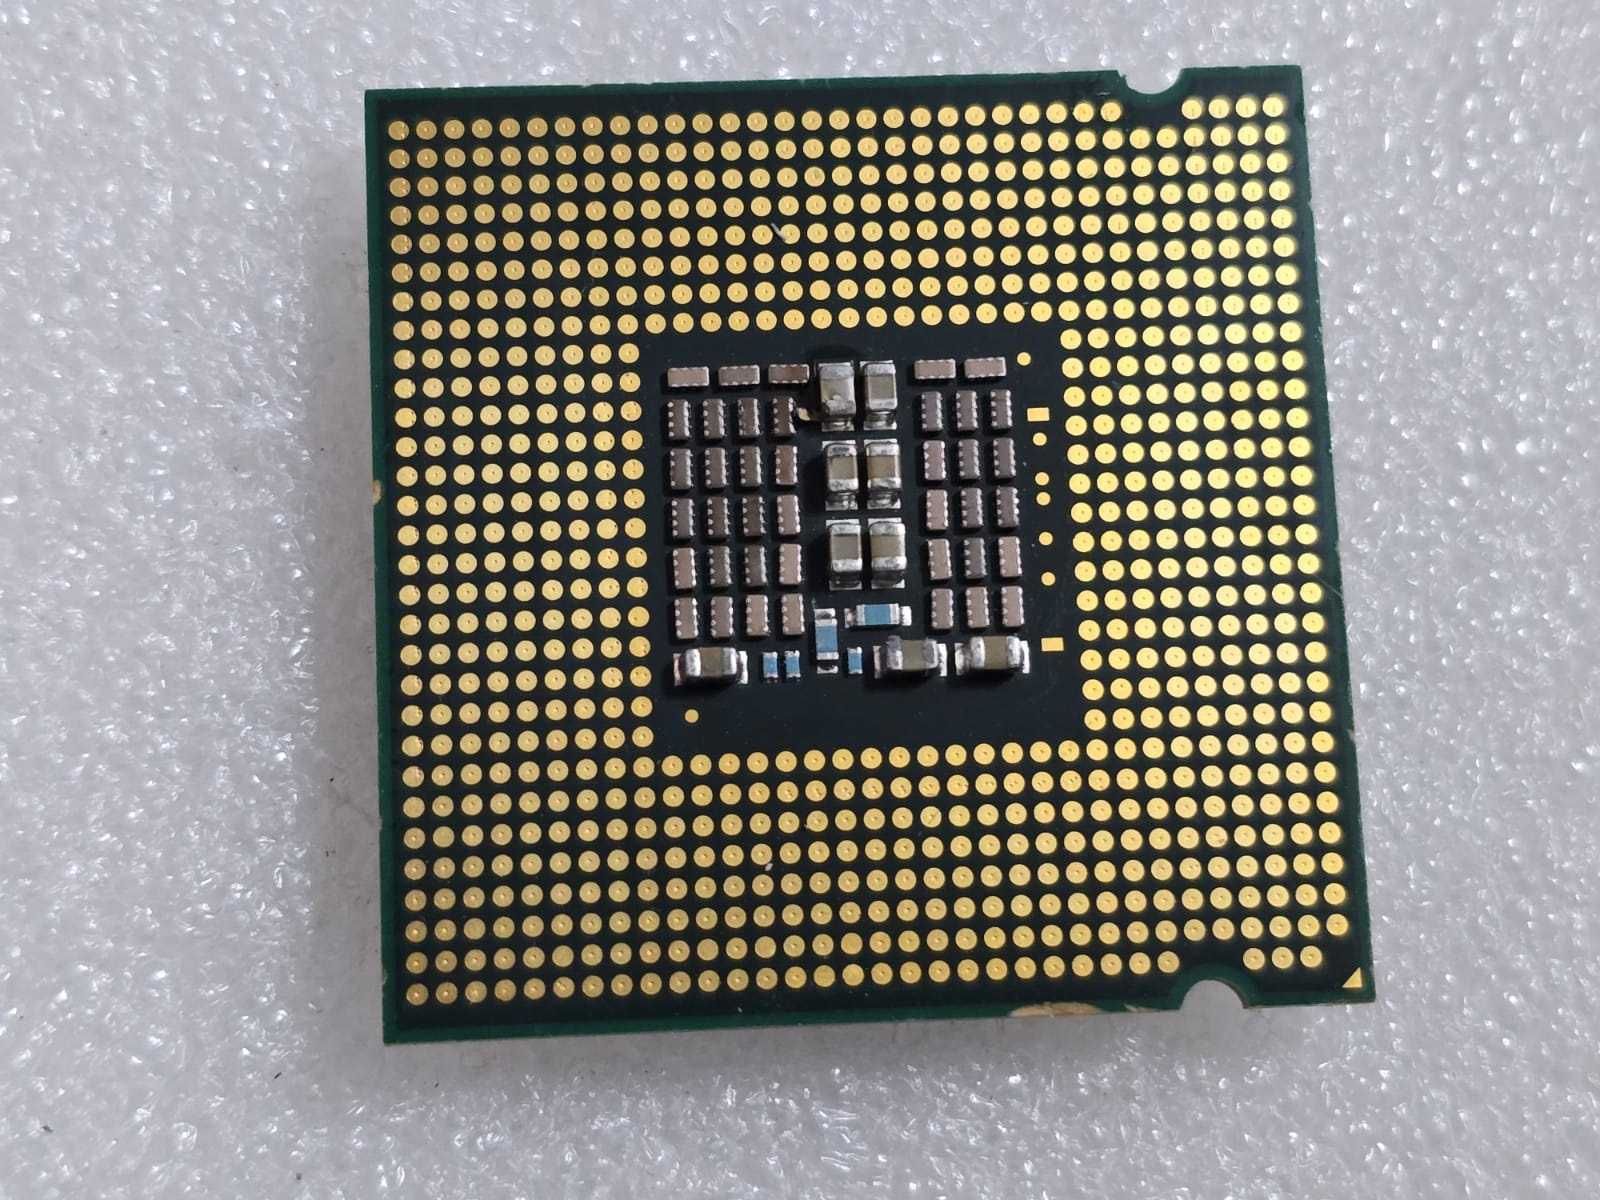 Procesor Intel Core 2 Quad Q9550 2.83 GHz 12 MB 1333 MHz - poze reale